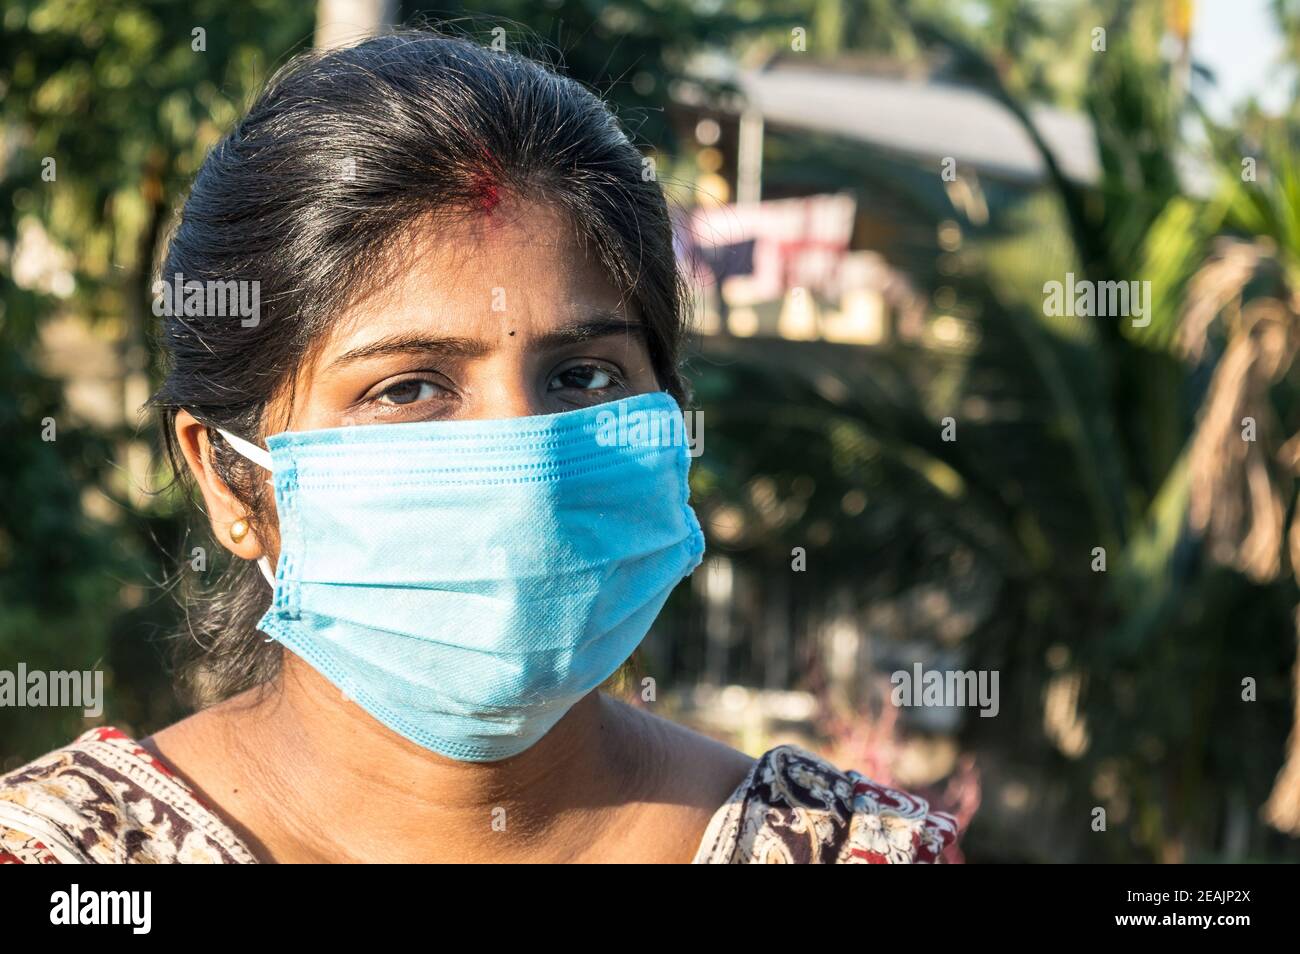 Masque souriant. Femme souriante portant un masque. Gros plan vue de face d'une femme indienne heureuse portant un masque souriant et regardant l'appareil photo. Médecine de santé contexte Inde. Banque D'Images